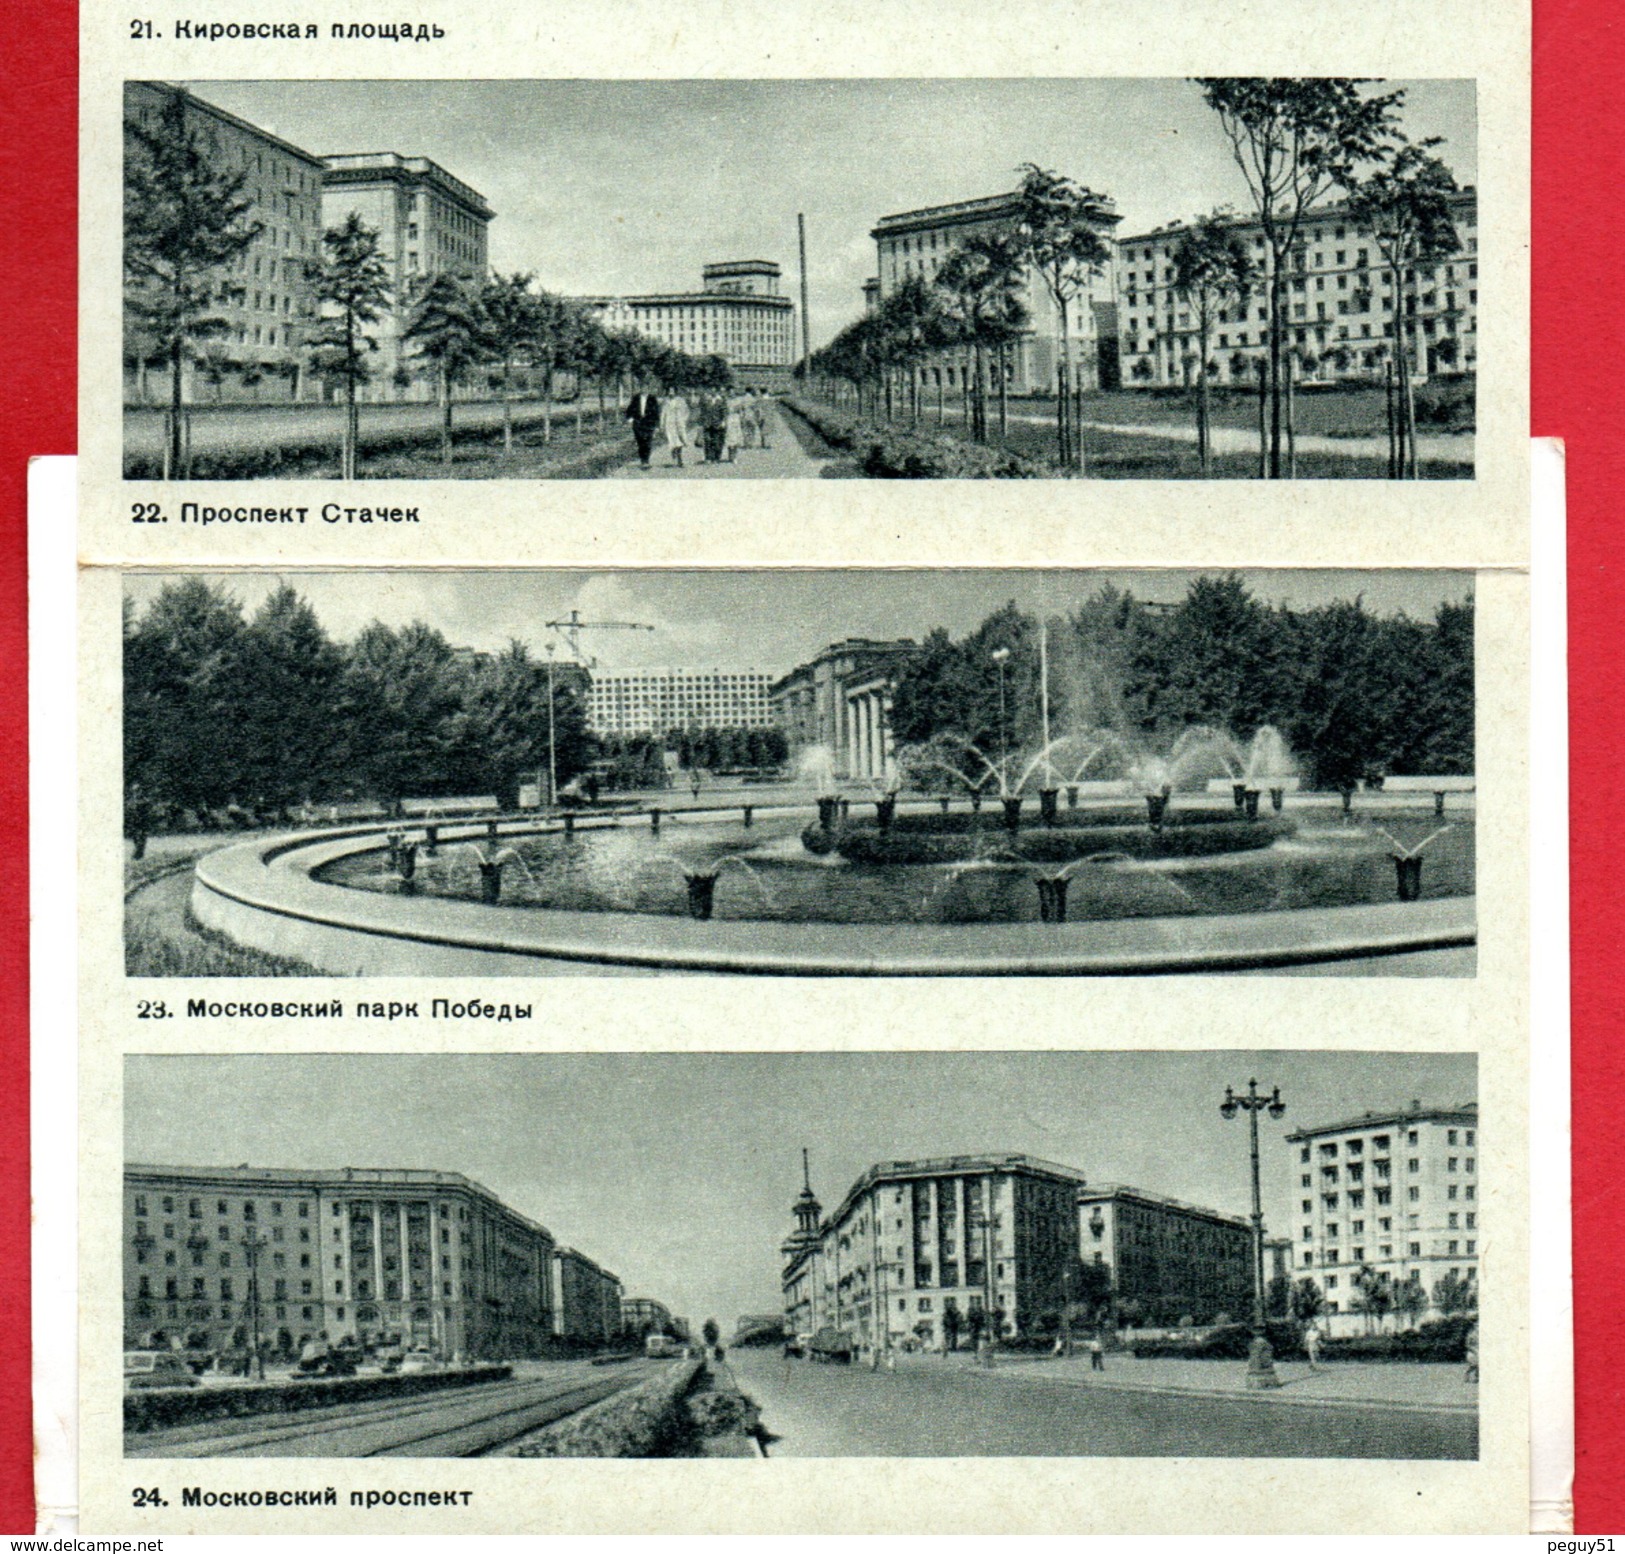 Dépliant touristique de Leningrad ( Saint-Pétersbourg). 26 photographies noir et blanc de G.H. Savin. 1962